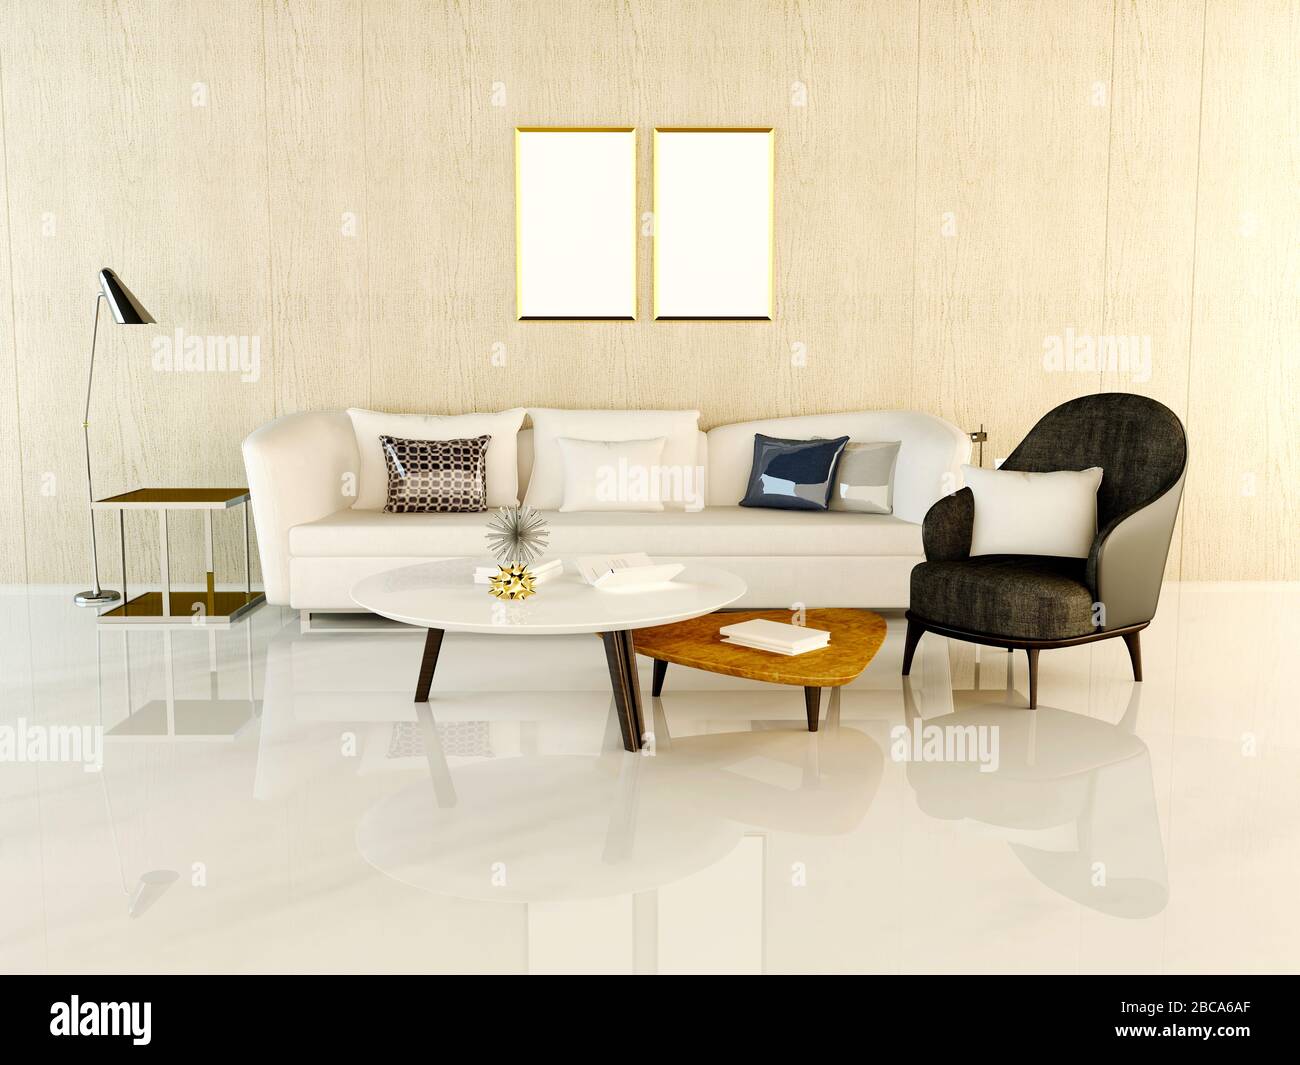 3d render of modern living room Stock Photo